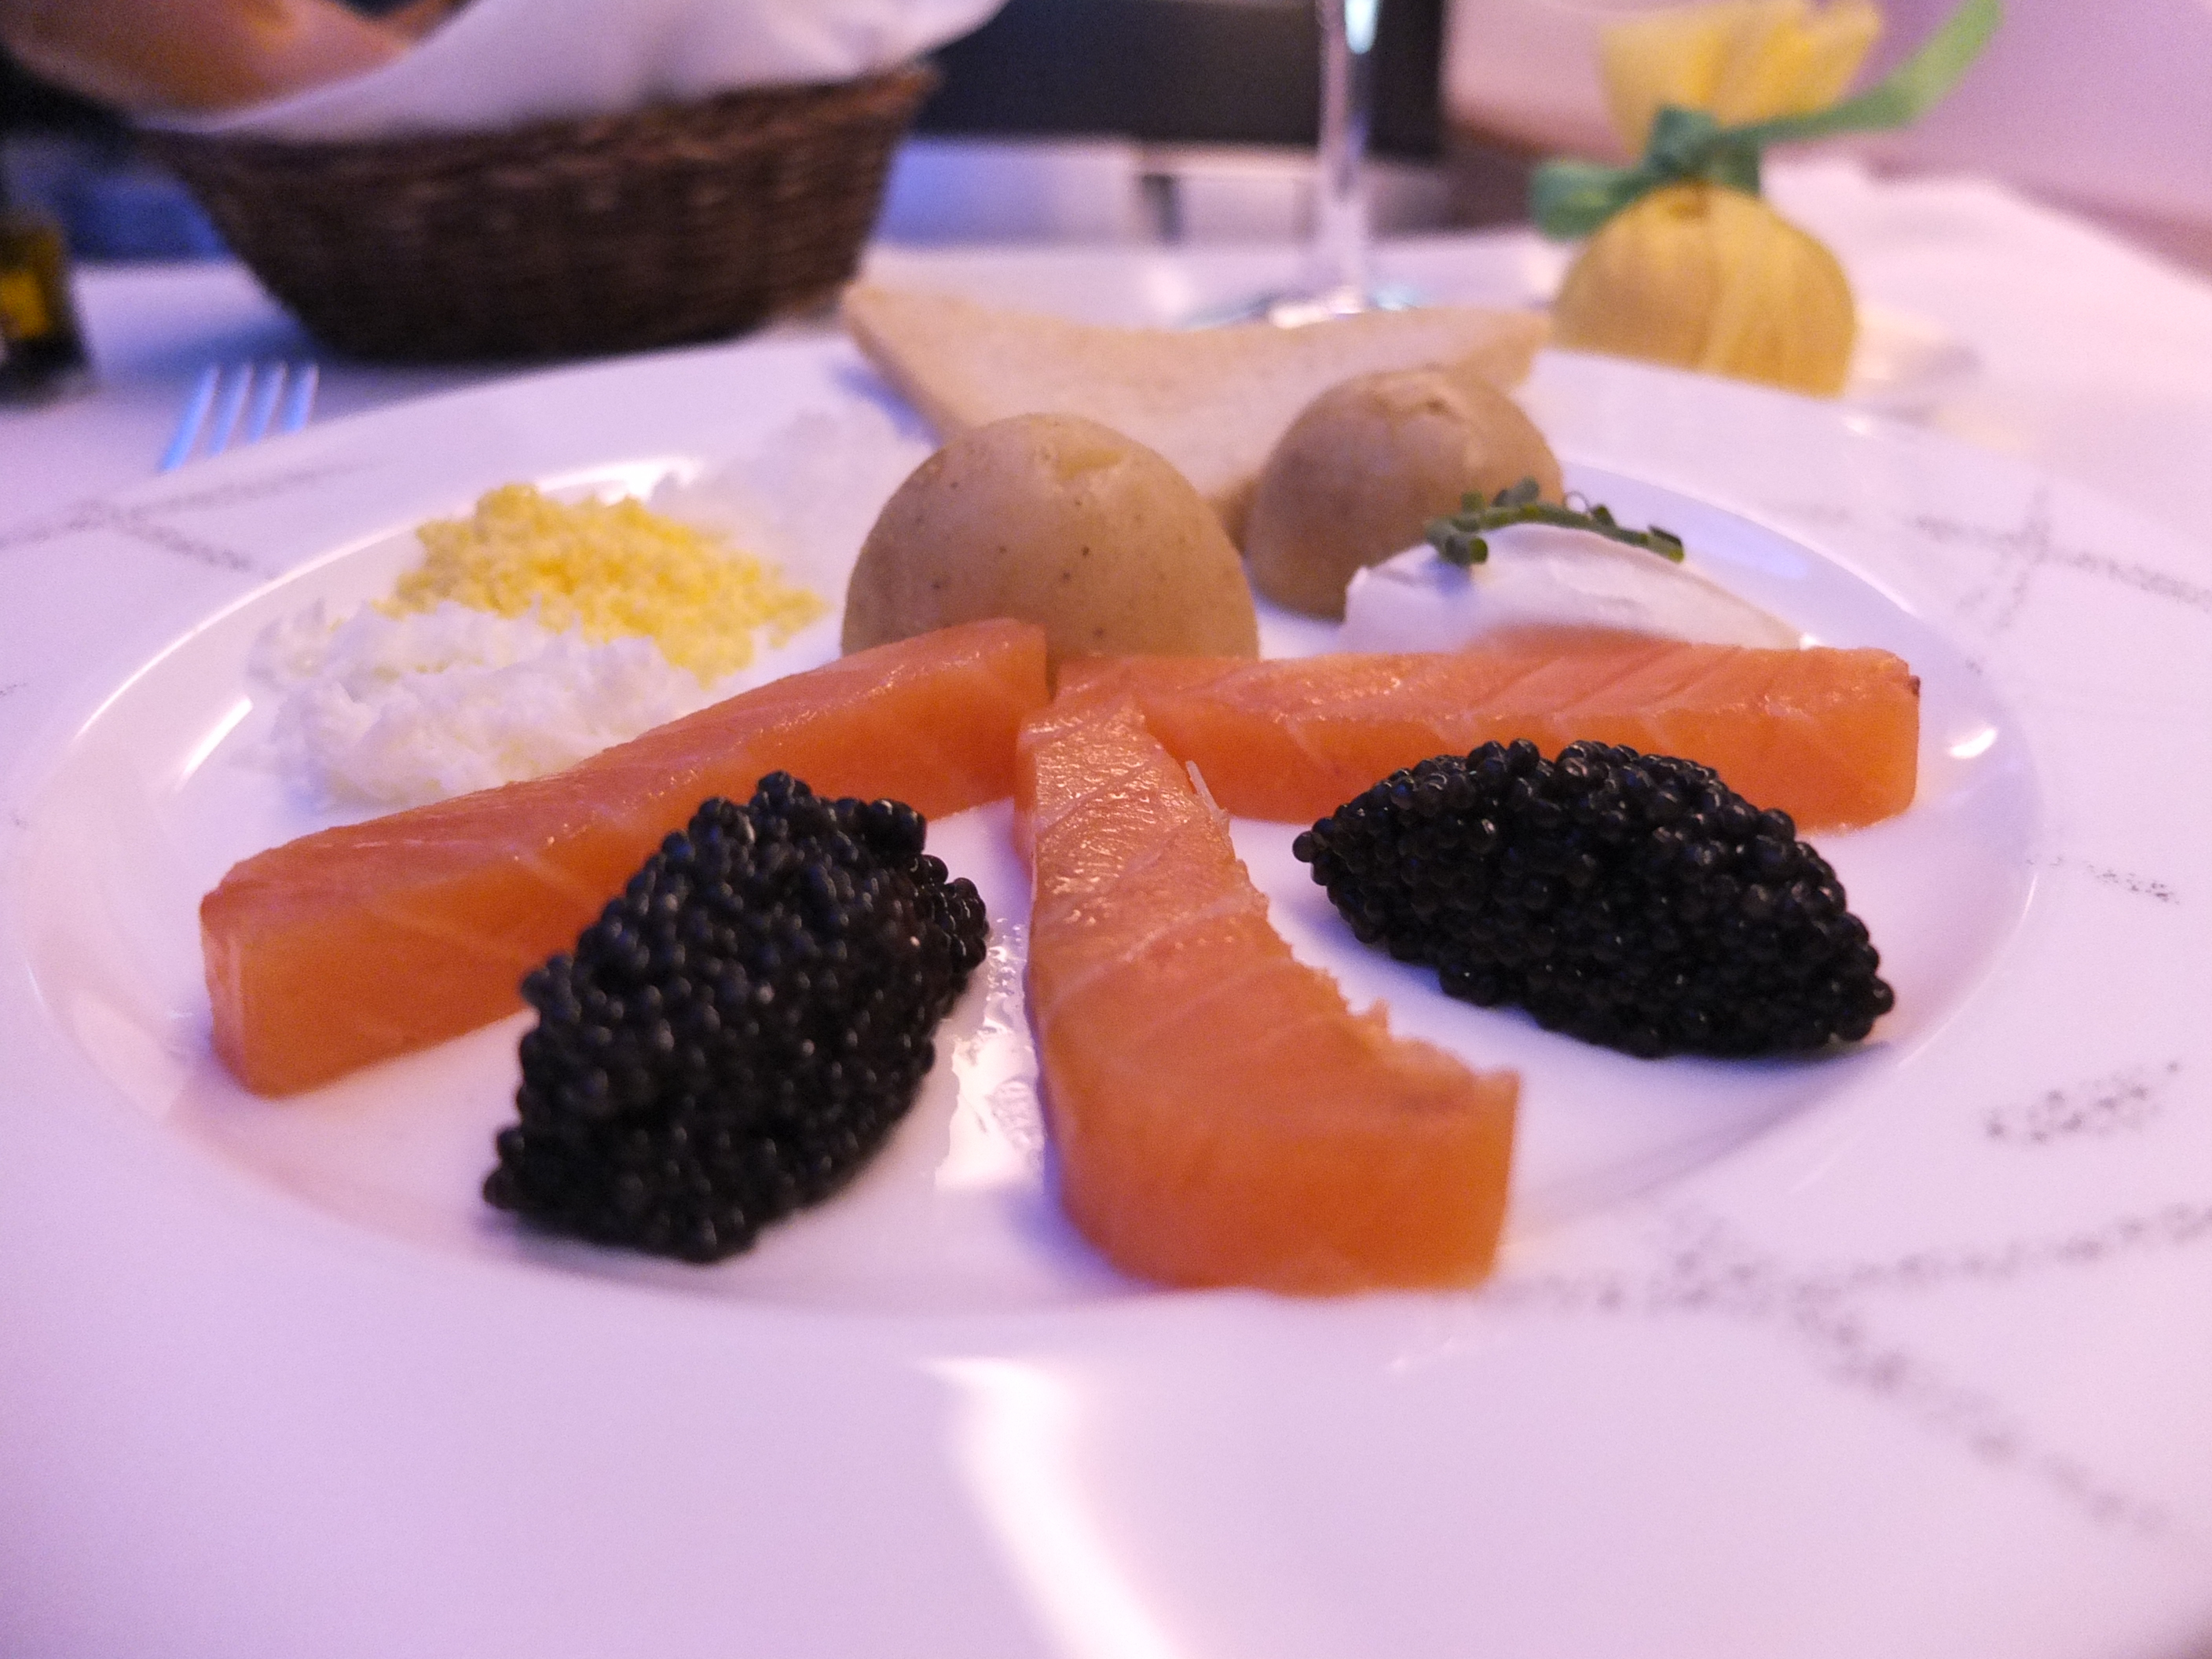 Balik salmon and caviar